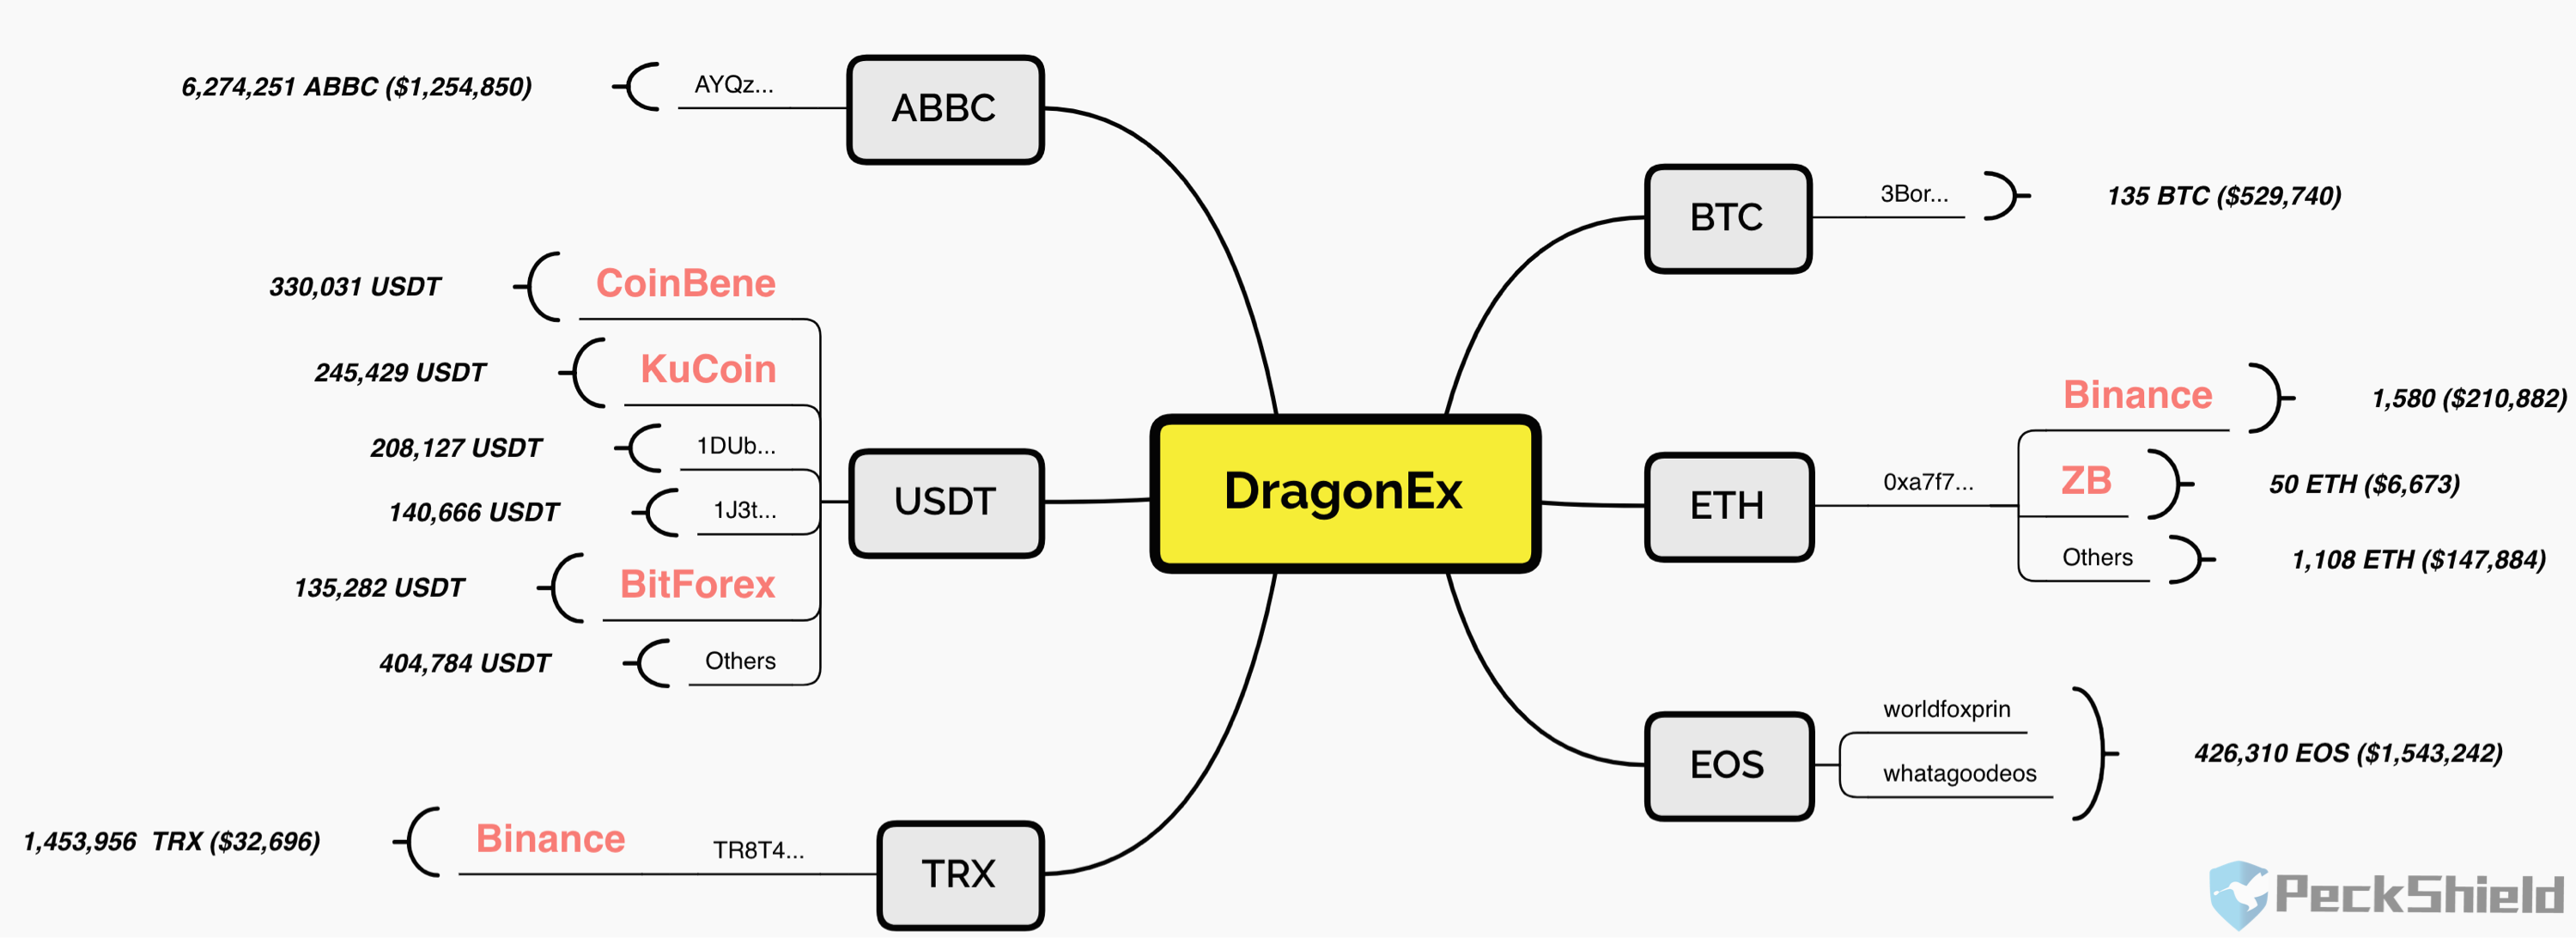 DragonEx 交易所共计损失 602 万美元数字资产，已有近百万流入交易所